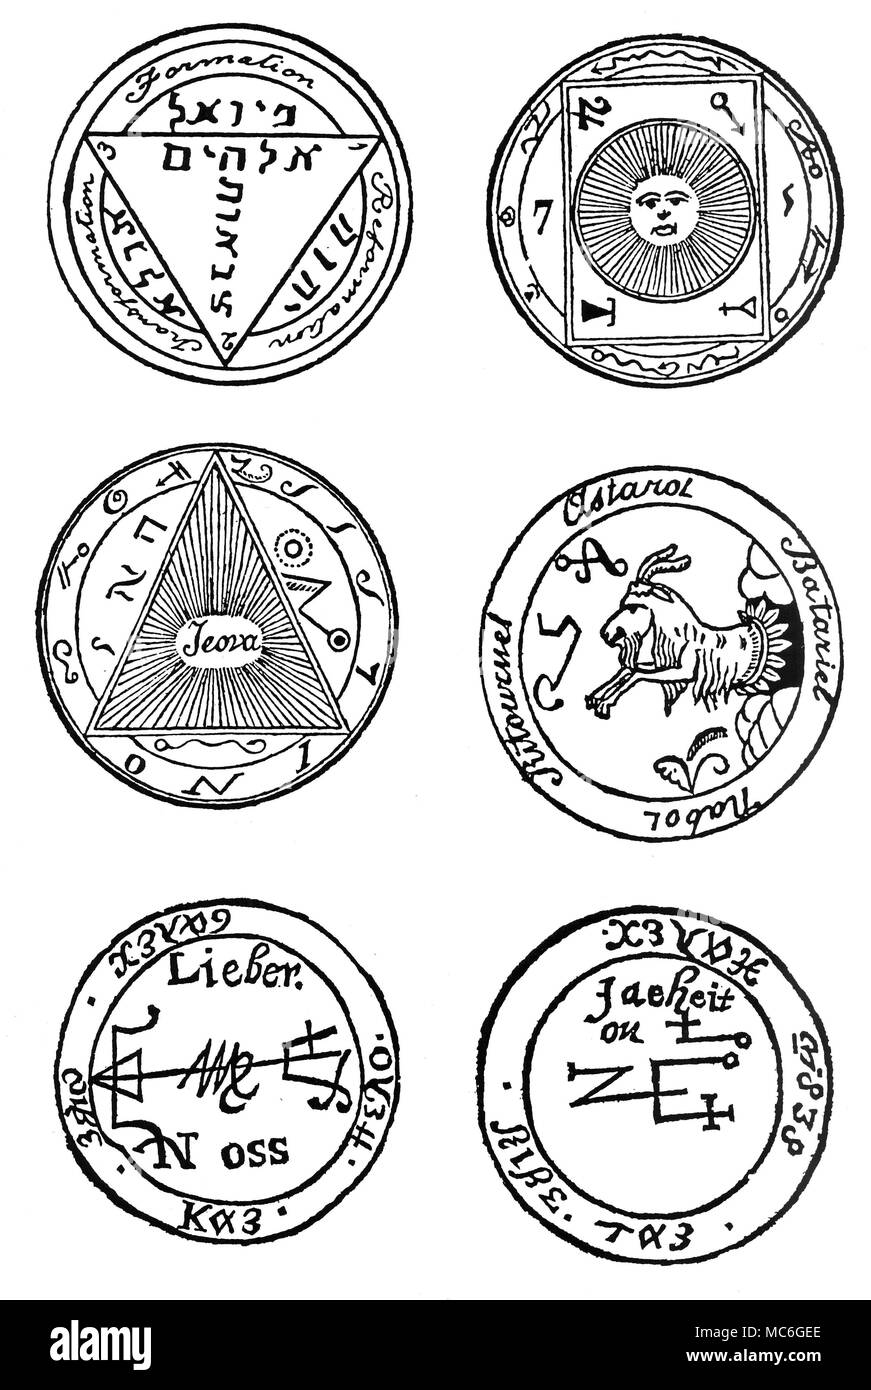 GRIMOIRES - TALISMANE Talismane sind magische Figuren entworfen, um bestimmte Effekte durch geistliche Mittel - in der Regel durch die Kraft einer besonderen Engel oder Dämon zu erreichen. Wie die Mehrheit der Talismane, die sechs hier aufgezeichnet werden letztlich aus dem grimoire Tradition abgeleitet. Von oben, von links nach rechts zu lesen. Aus dem enchiridion von Papst Leo III. Talisman Ein Talisman aus dem grimoire, der Salbei der Pyramiden, aufgenommen von A.E. Waite in der zeremoniellen Magie, entworfen ist, Unsichtbarkeit der Besitzer zu gewähren - angeblich, es verleiht auch die Fähigkeit, durch feste Wände zu übergeben: Stockfoto